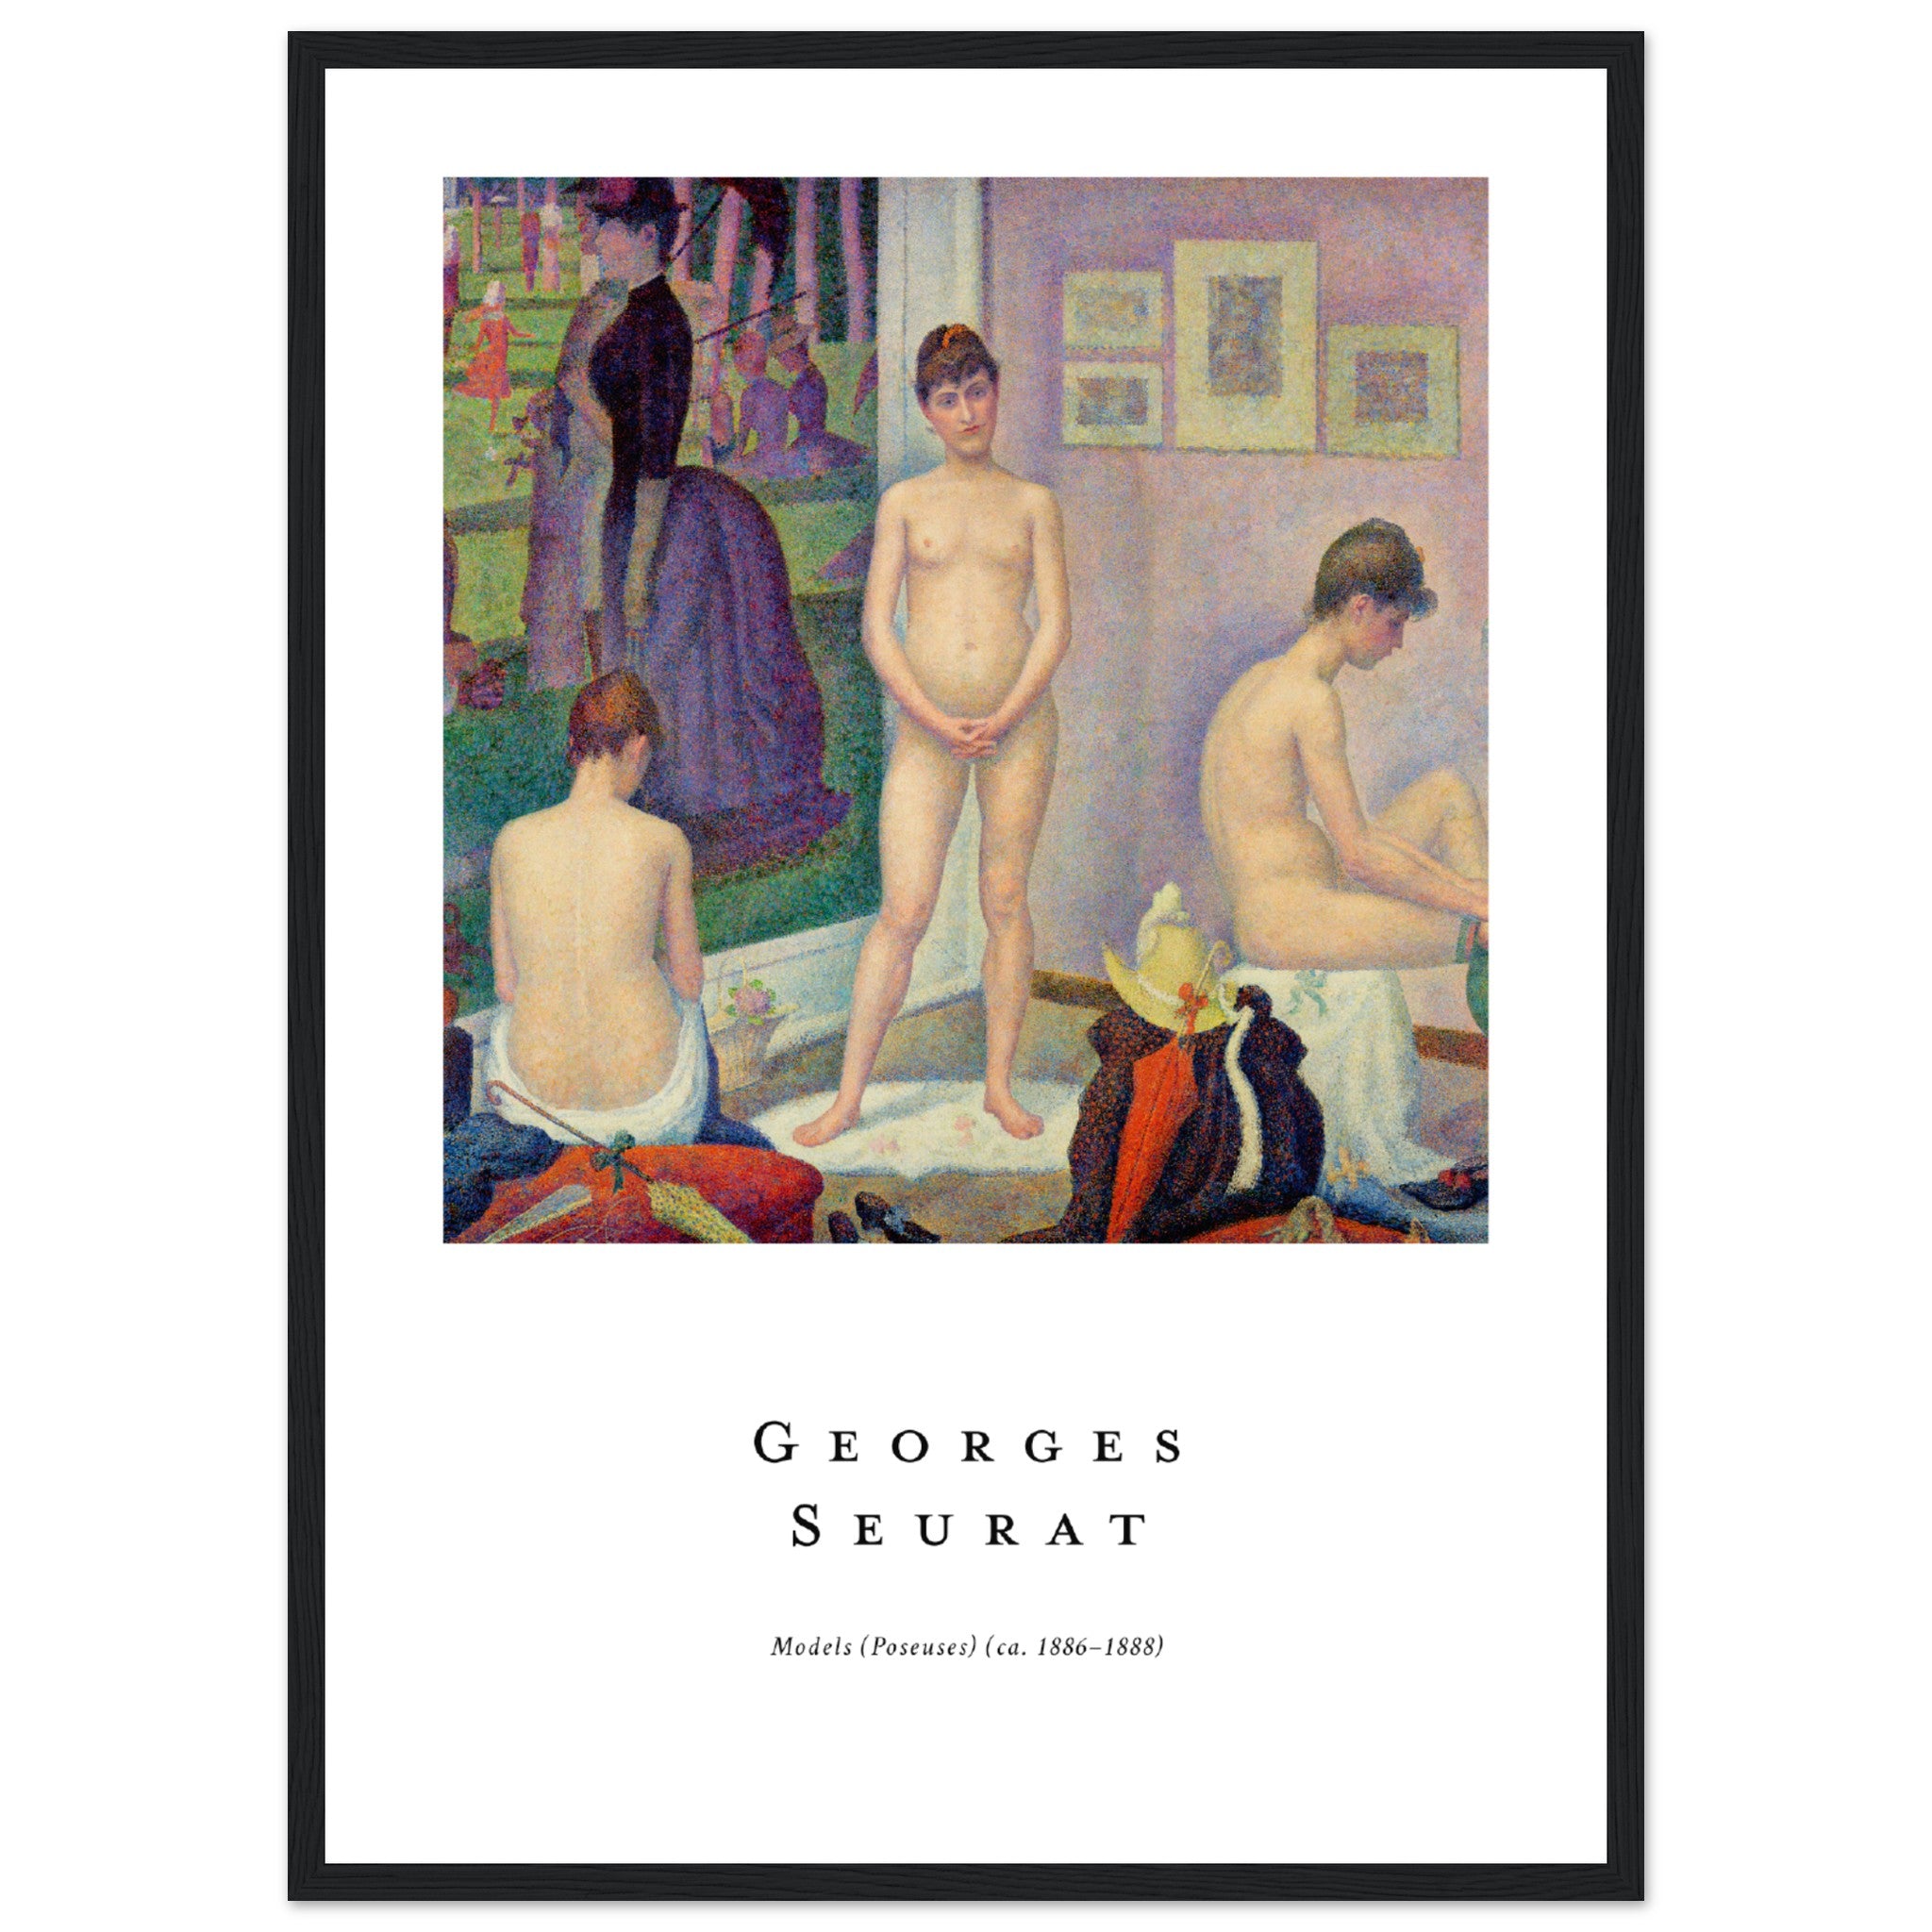 Modelos de Georges Seurat Póster